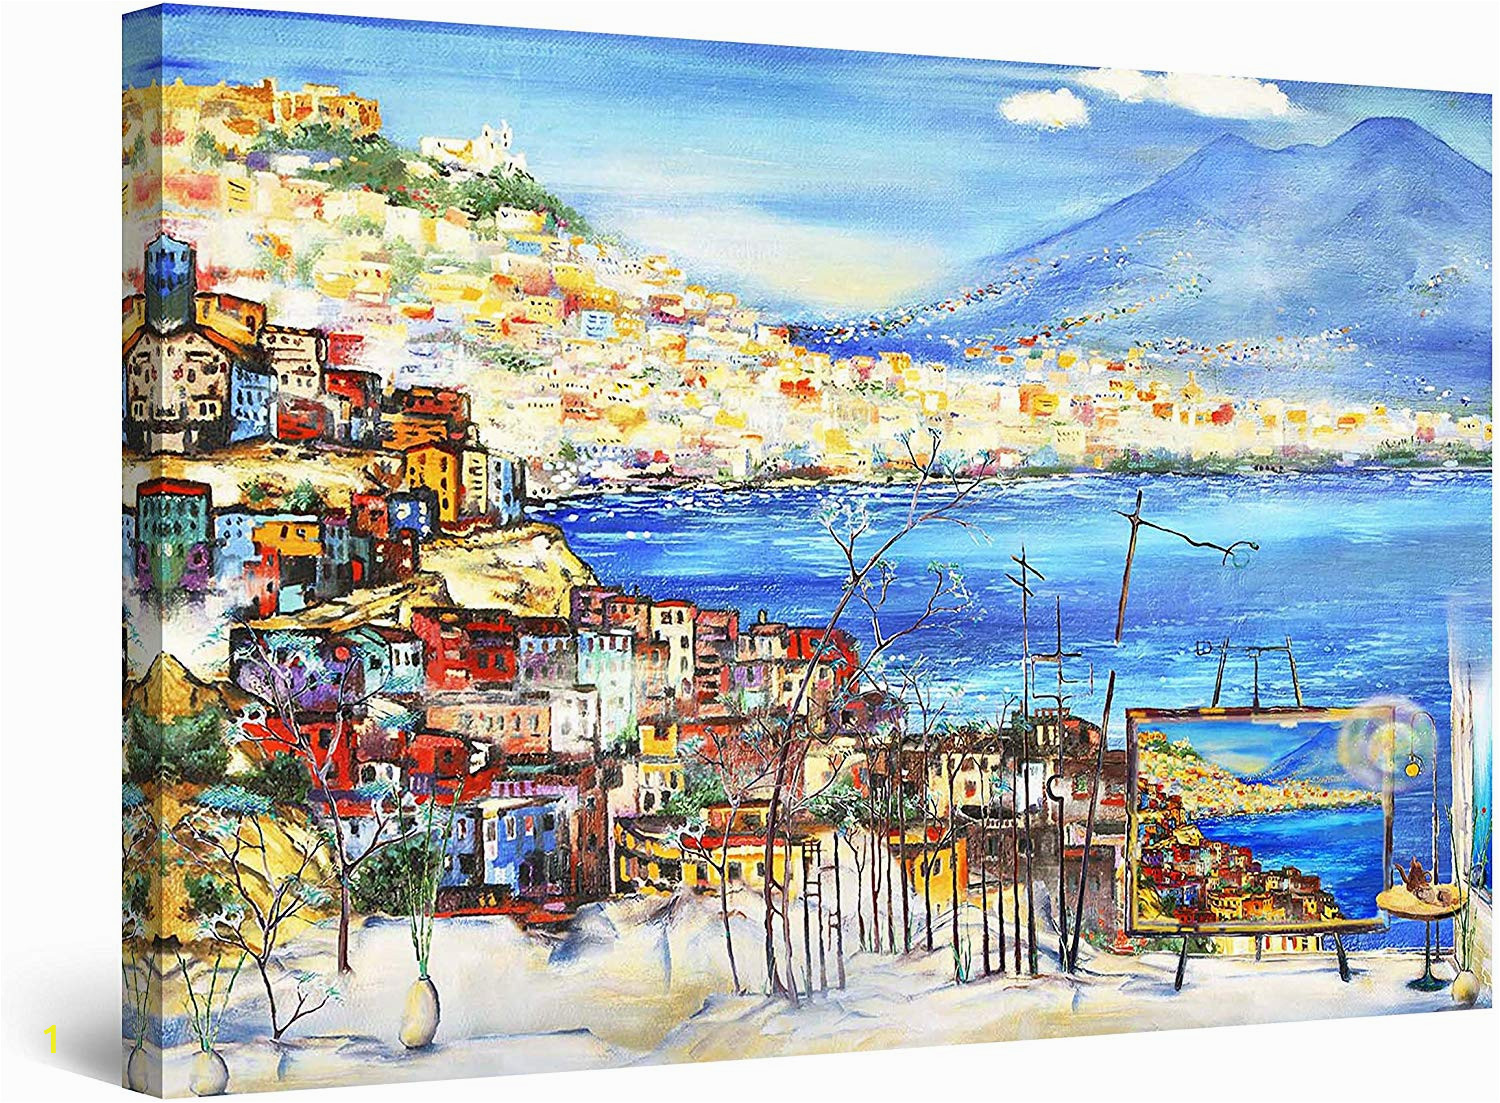 Startonight Mural Wall Art Amazon Startonight Canvas Wall Art Abstract Amalfi